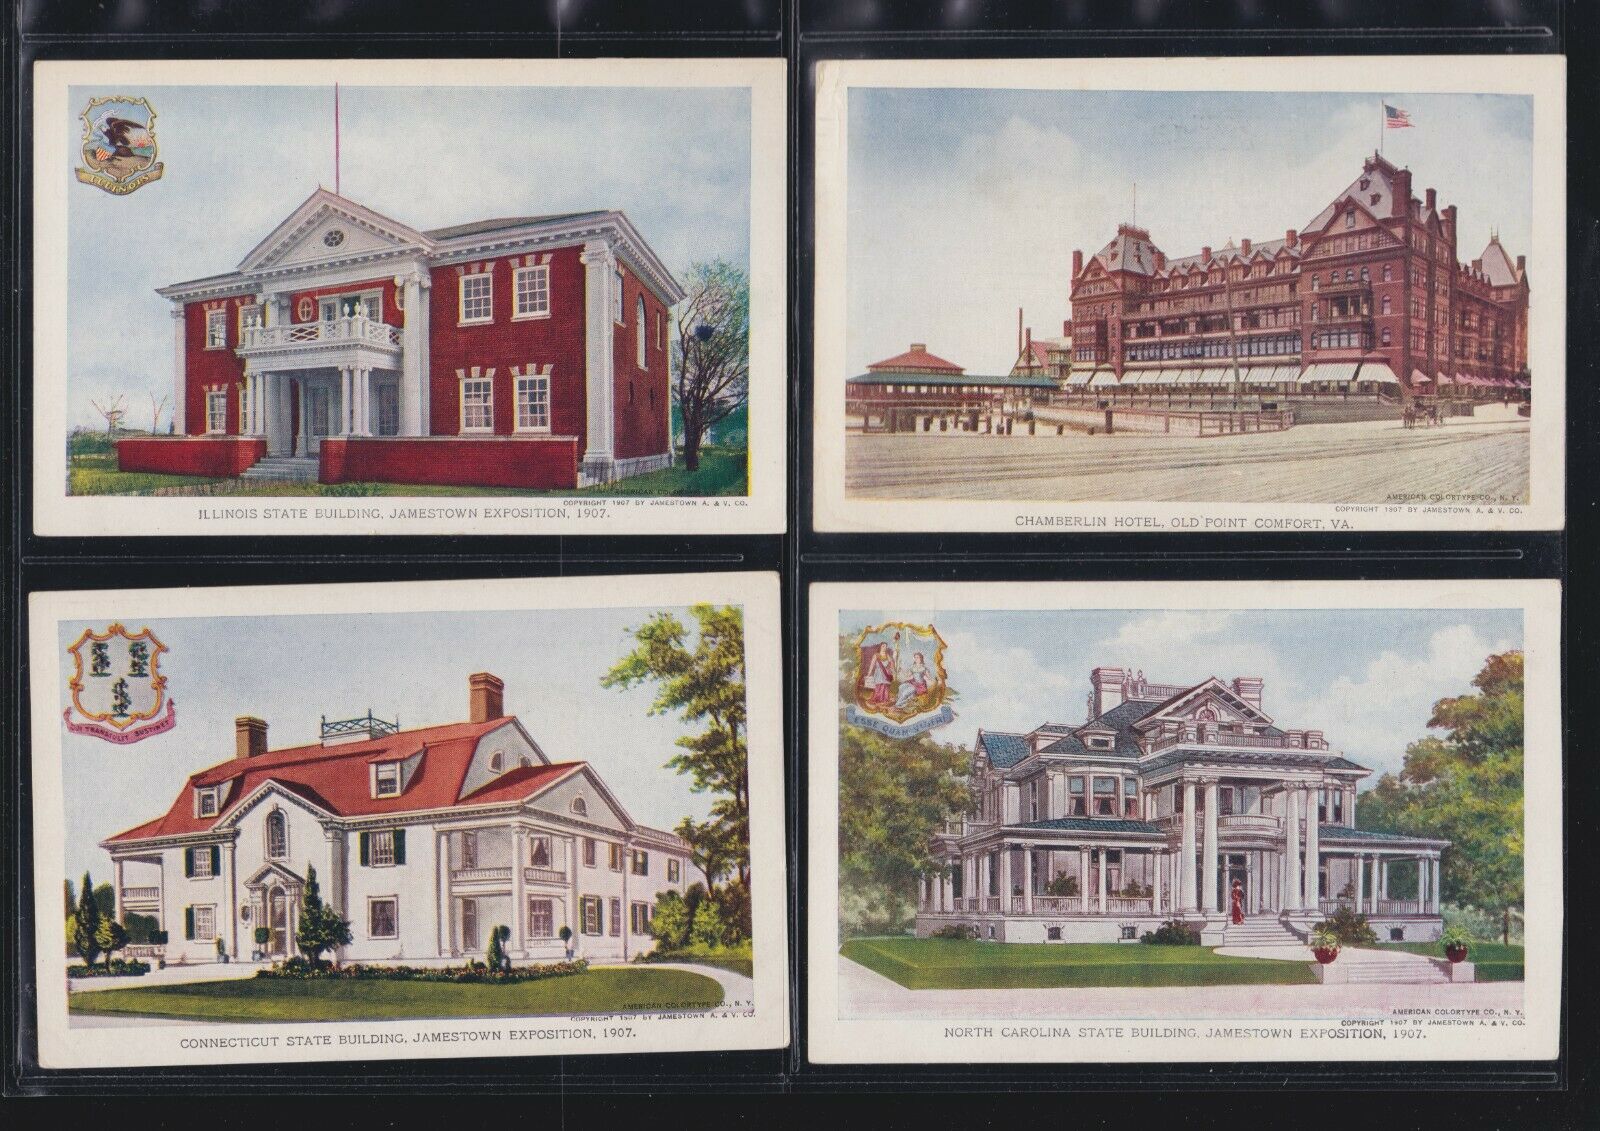 Us 1907 Jamestown Exposition Souvenir Post Cards Lot Of 4 (jtb40)